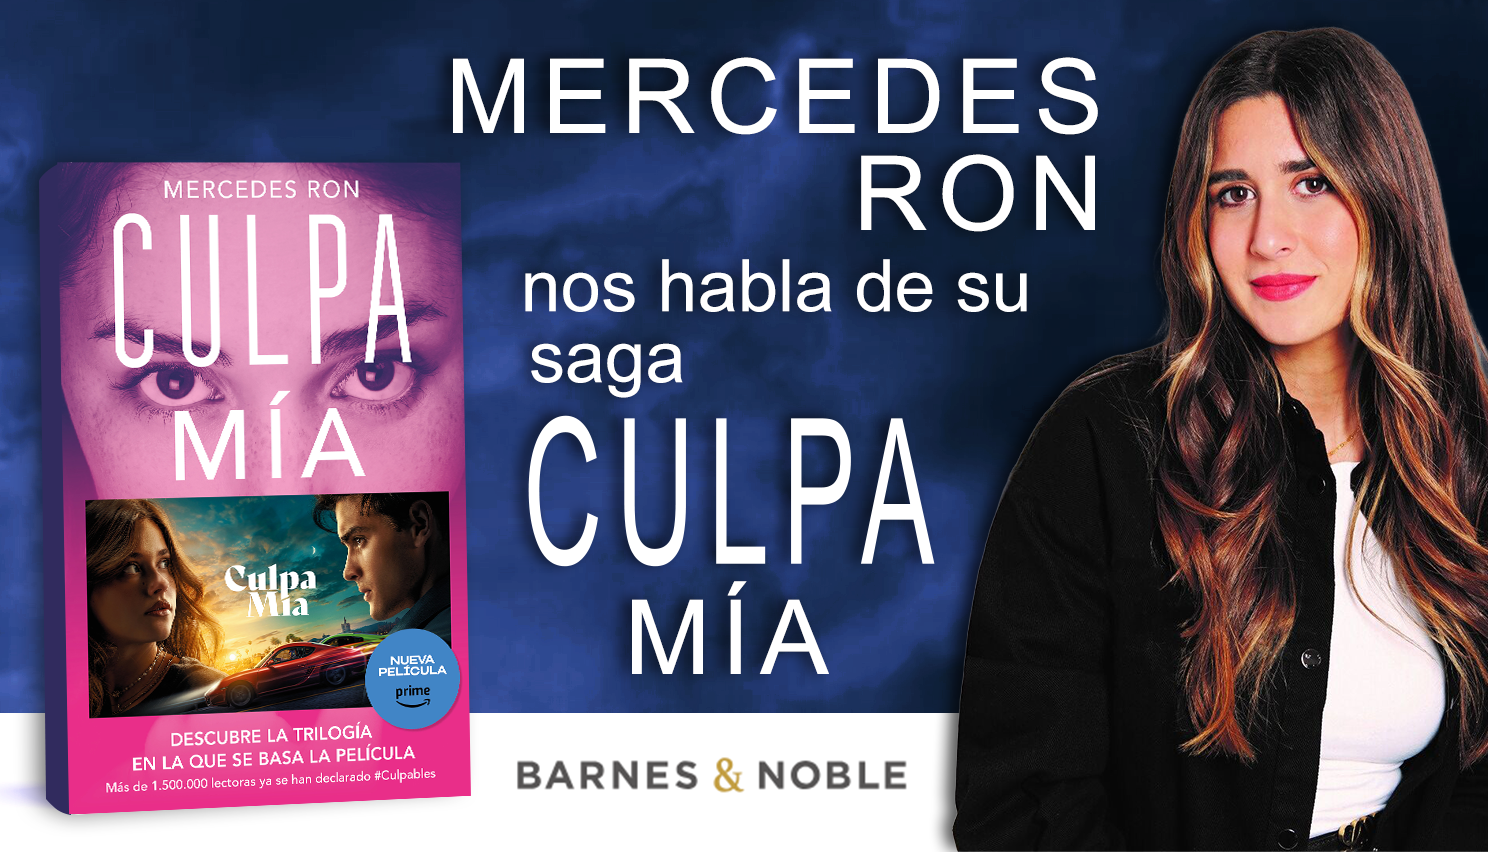 Culpa mía: Entrevista con Mercedes Ron para el blog de Barnes & Noble  “Aroma a libros” - B&N Reads